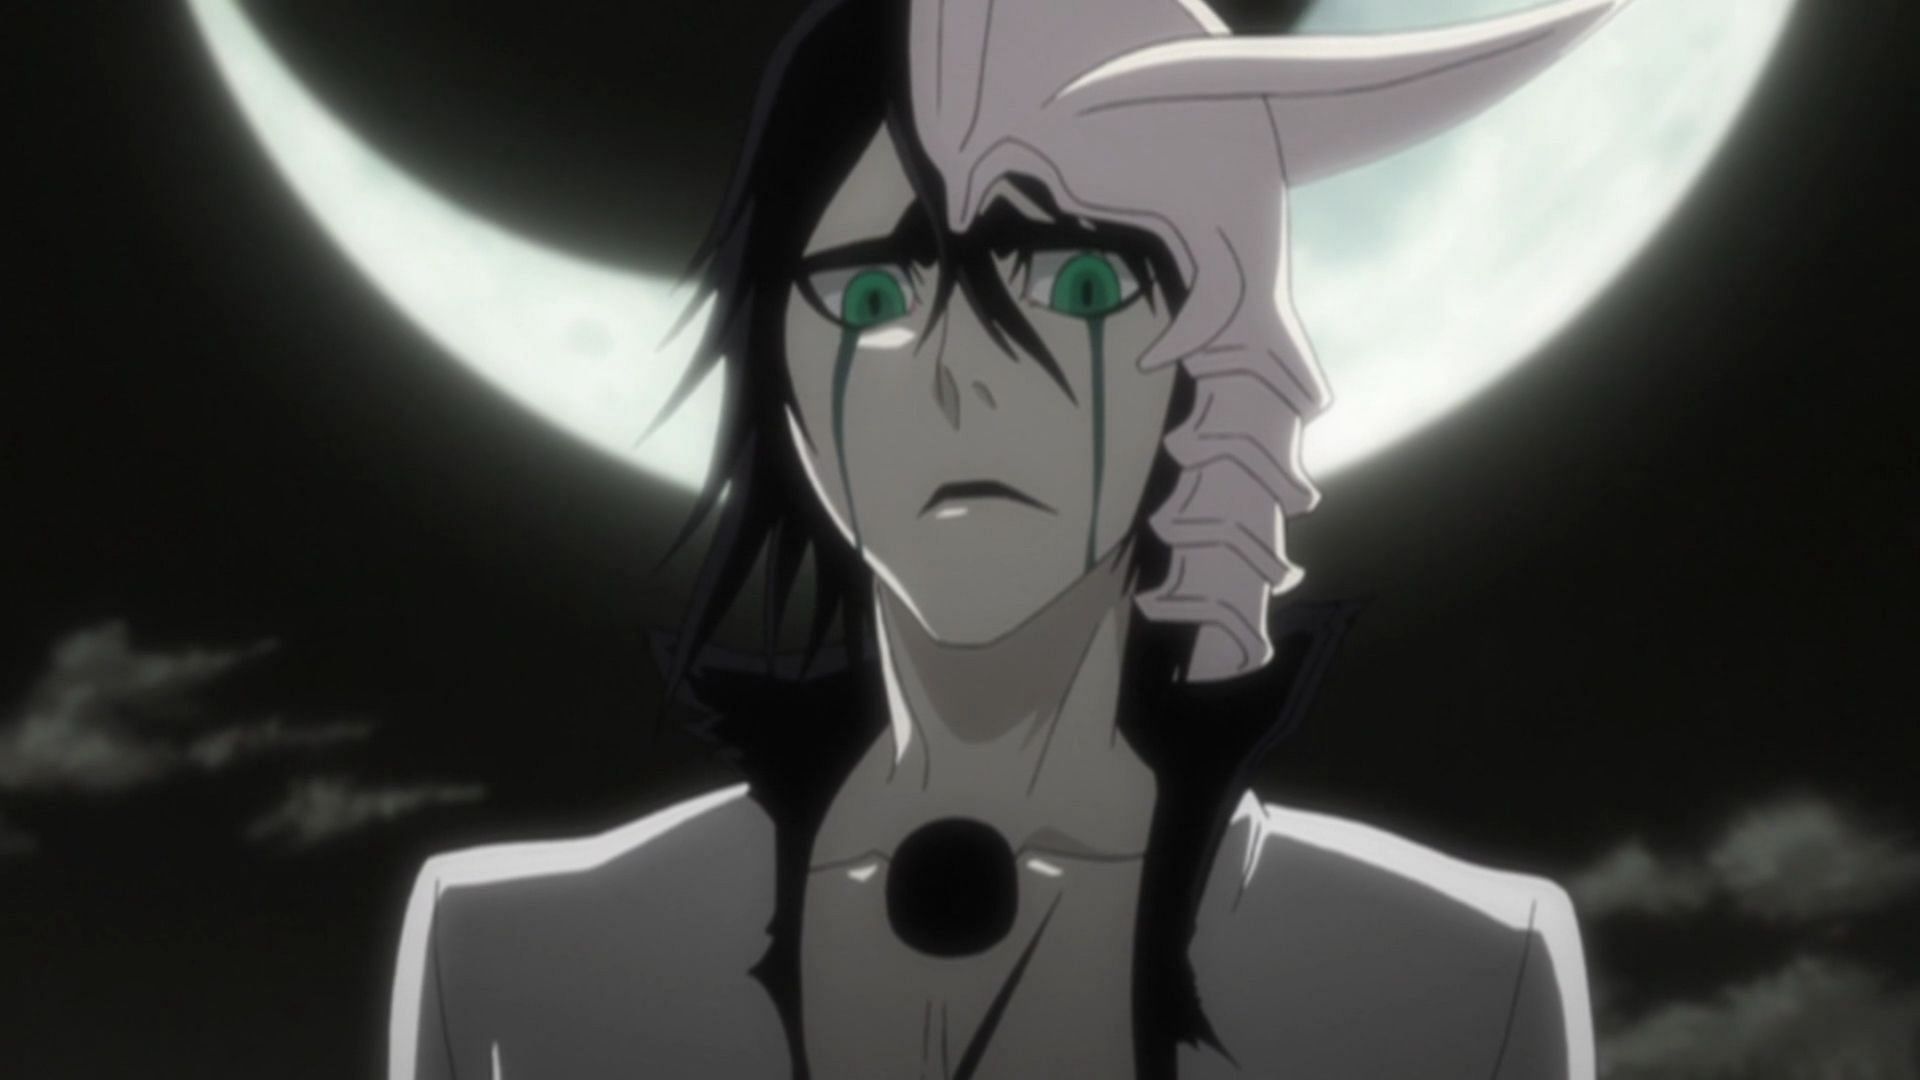 Ulquiorra as seen in the Bleach anime series (Image via Studio Pierrot)